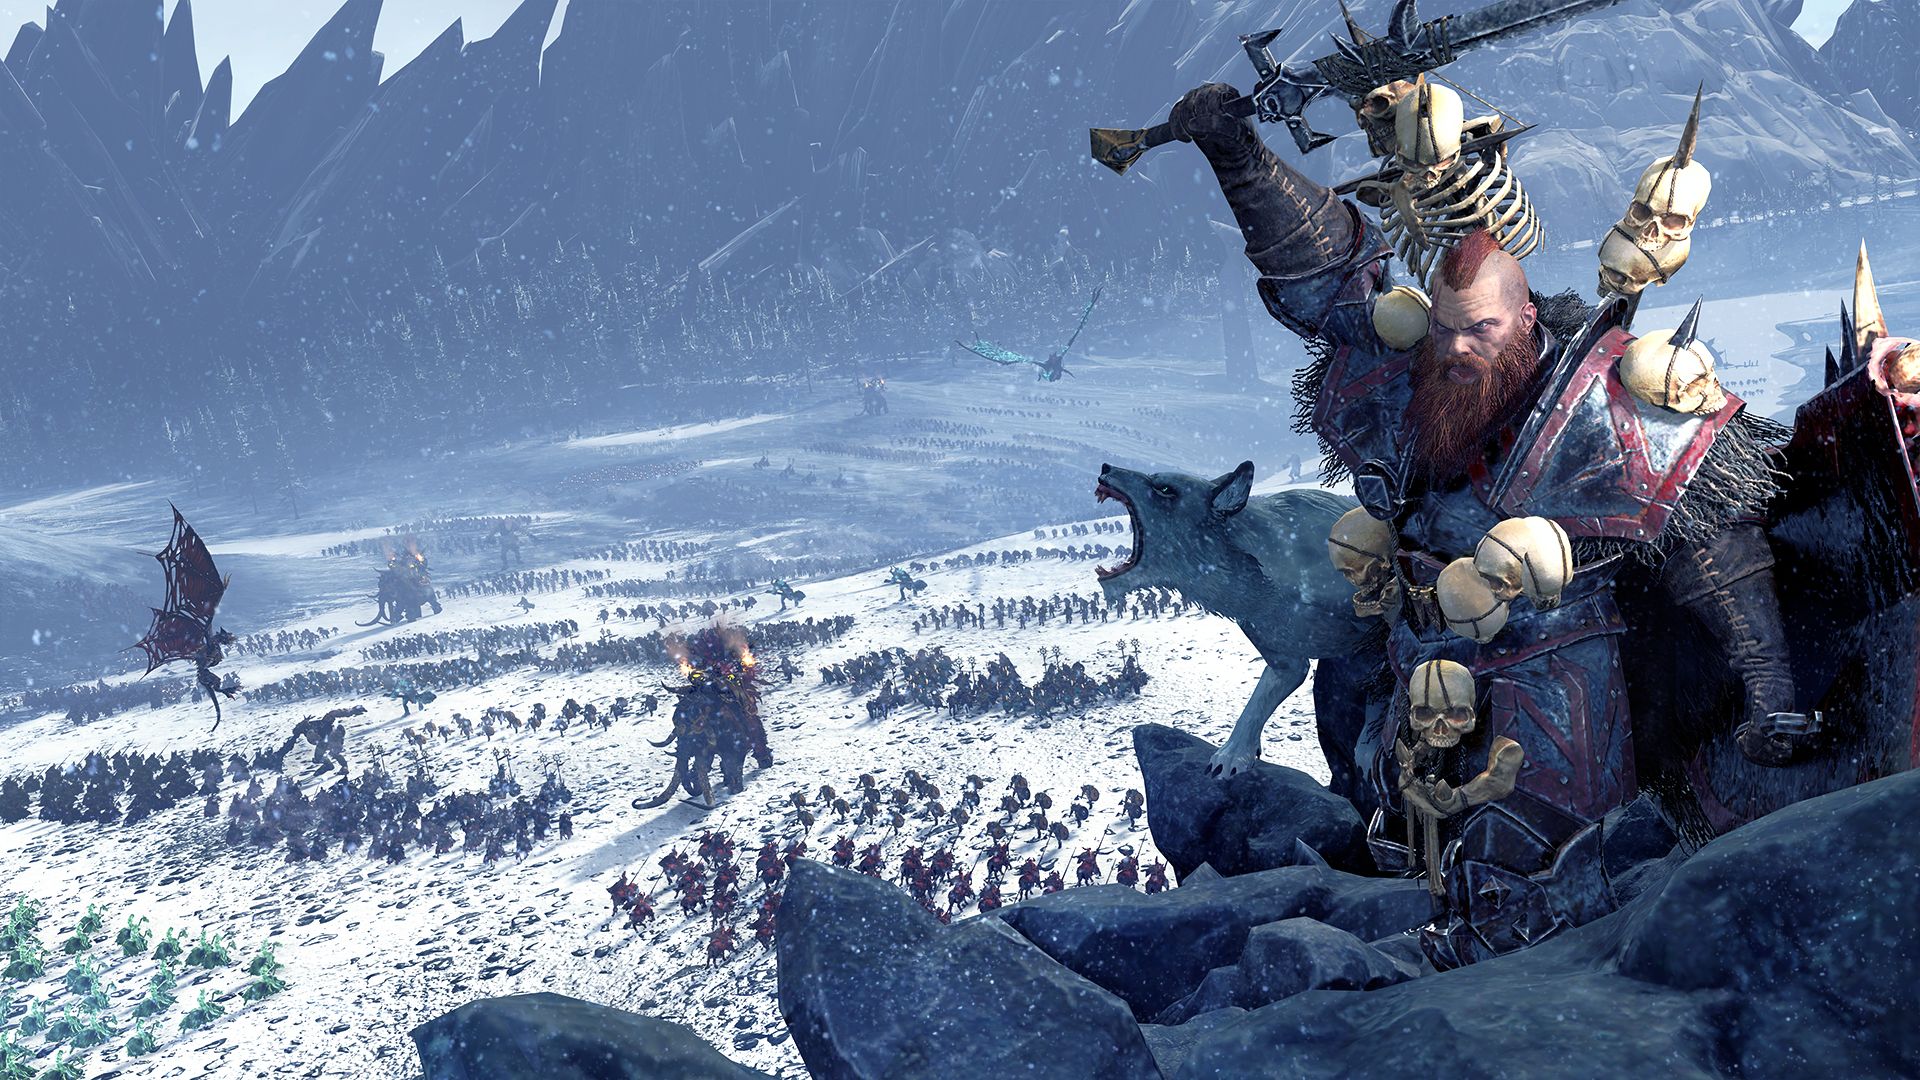 Скачать обои Норска (Total War: Warhammer) на телефон бесплатно